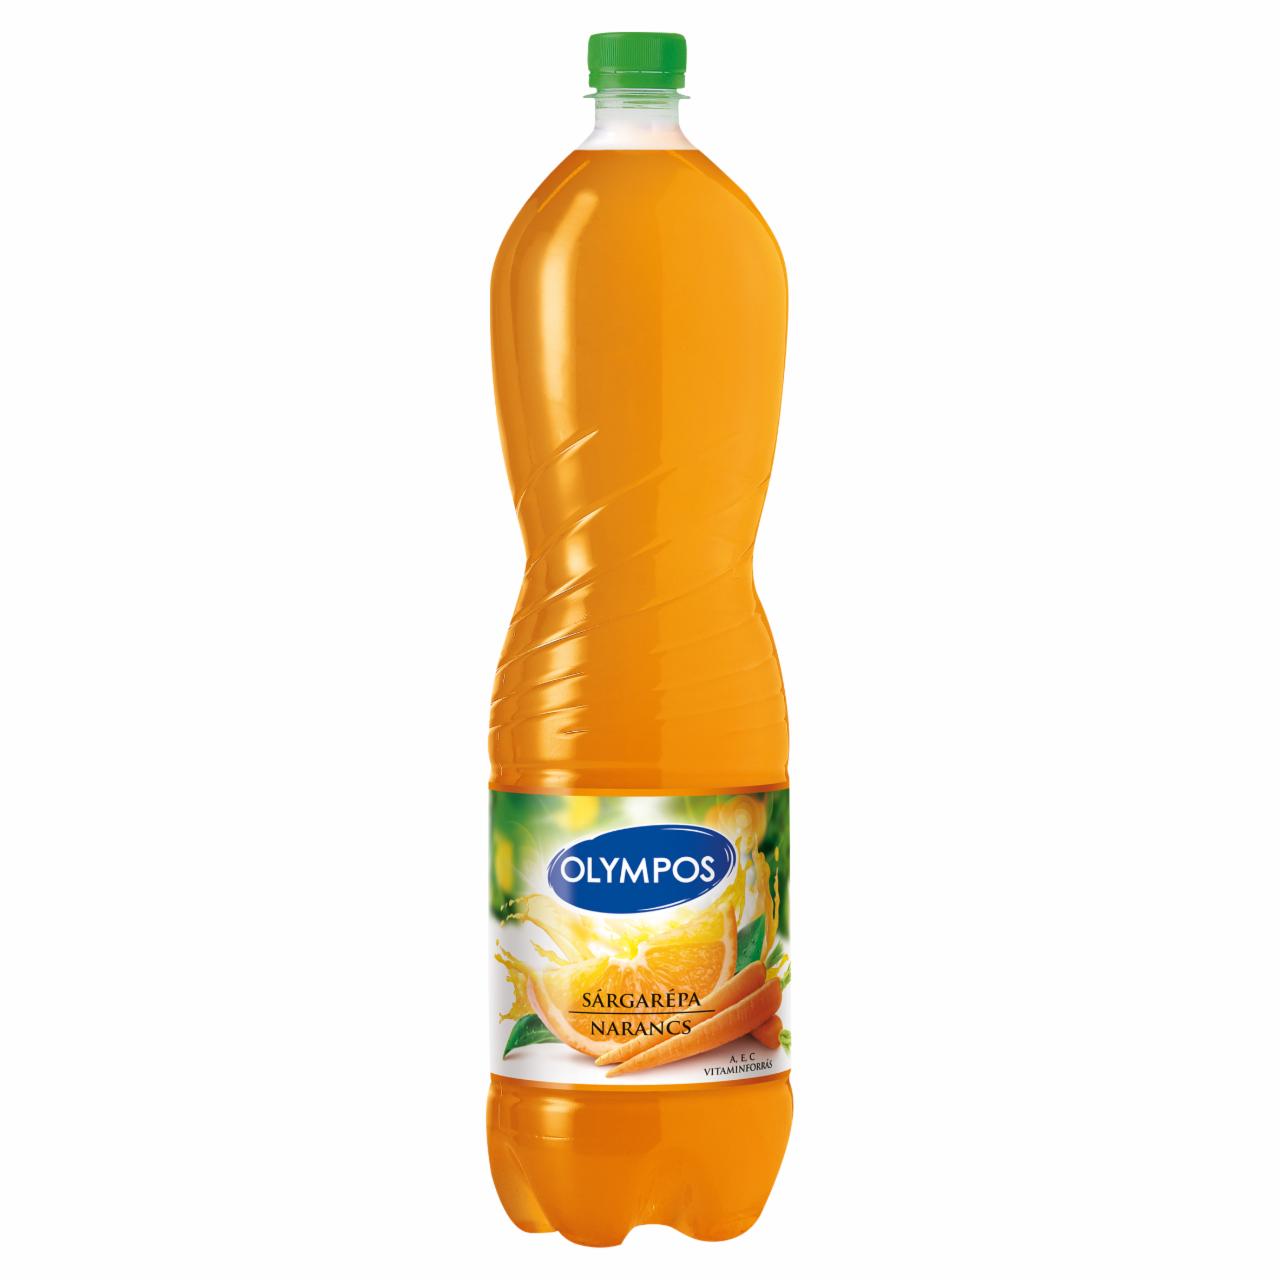 Képek - Olympos rostos sárgarépa-narancs ital 1,5 l